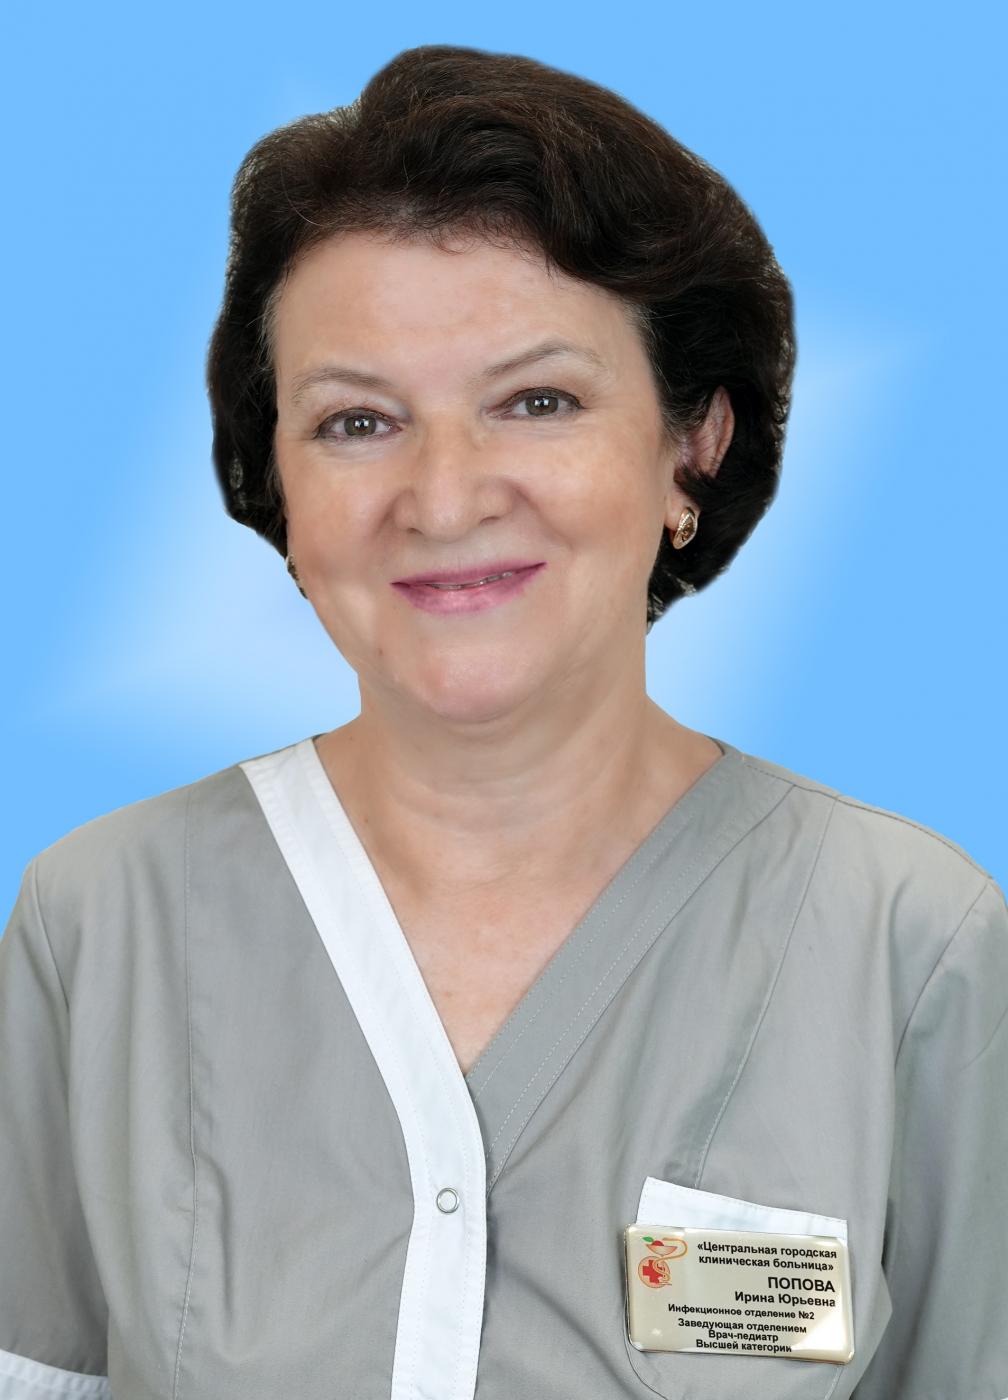 Попова Ирина Юрьевна